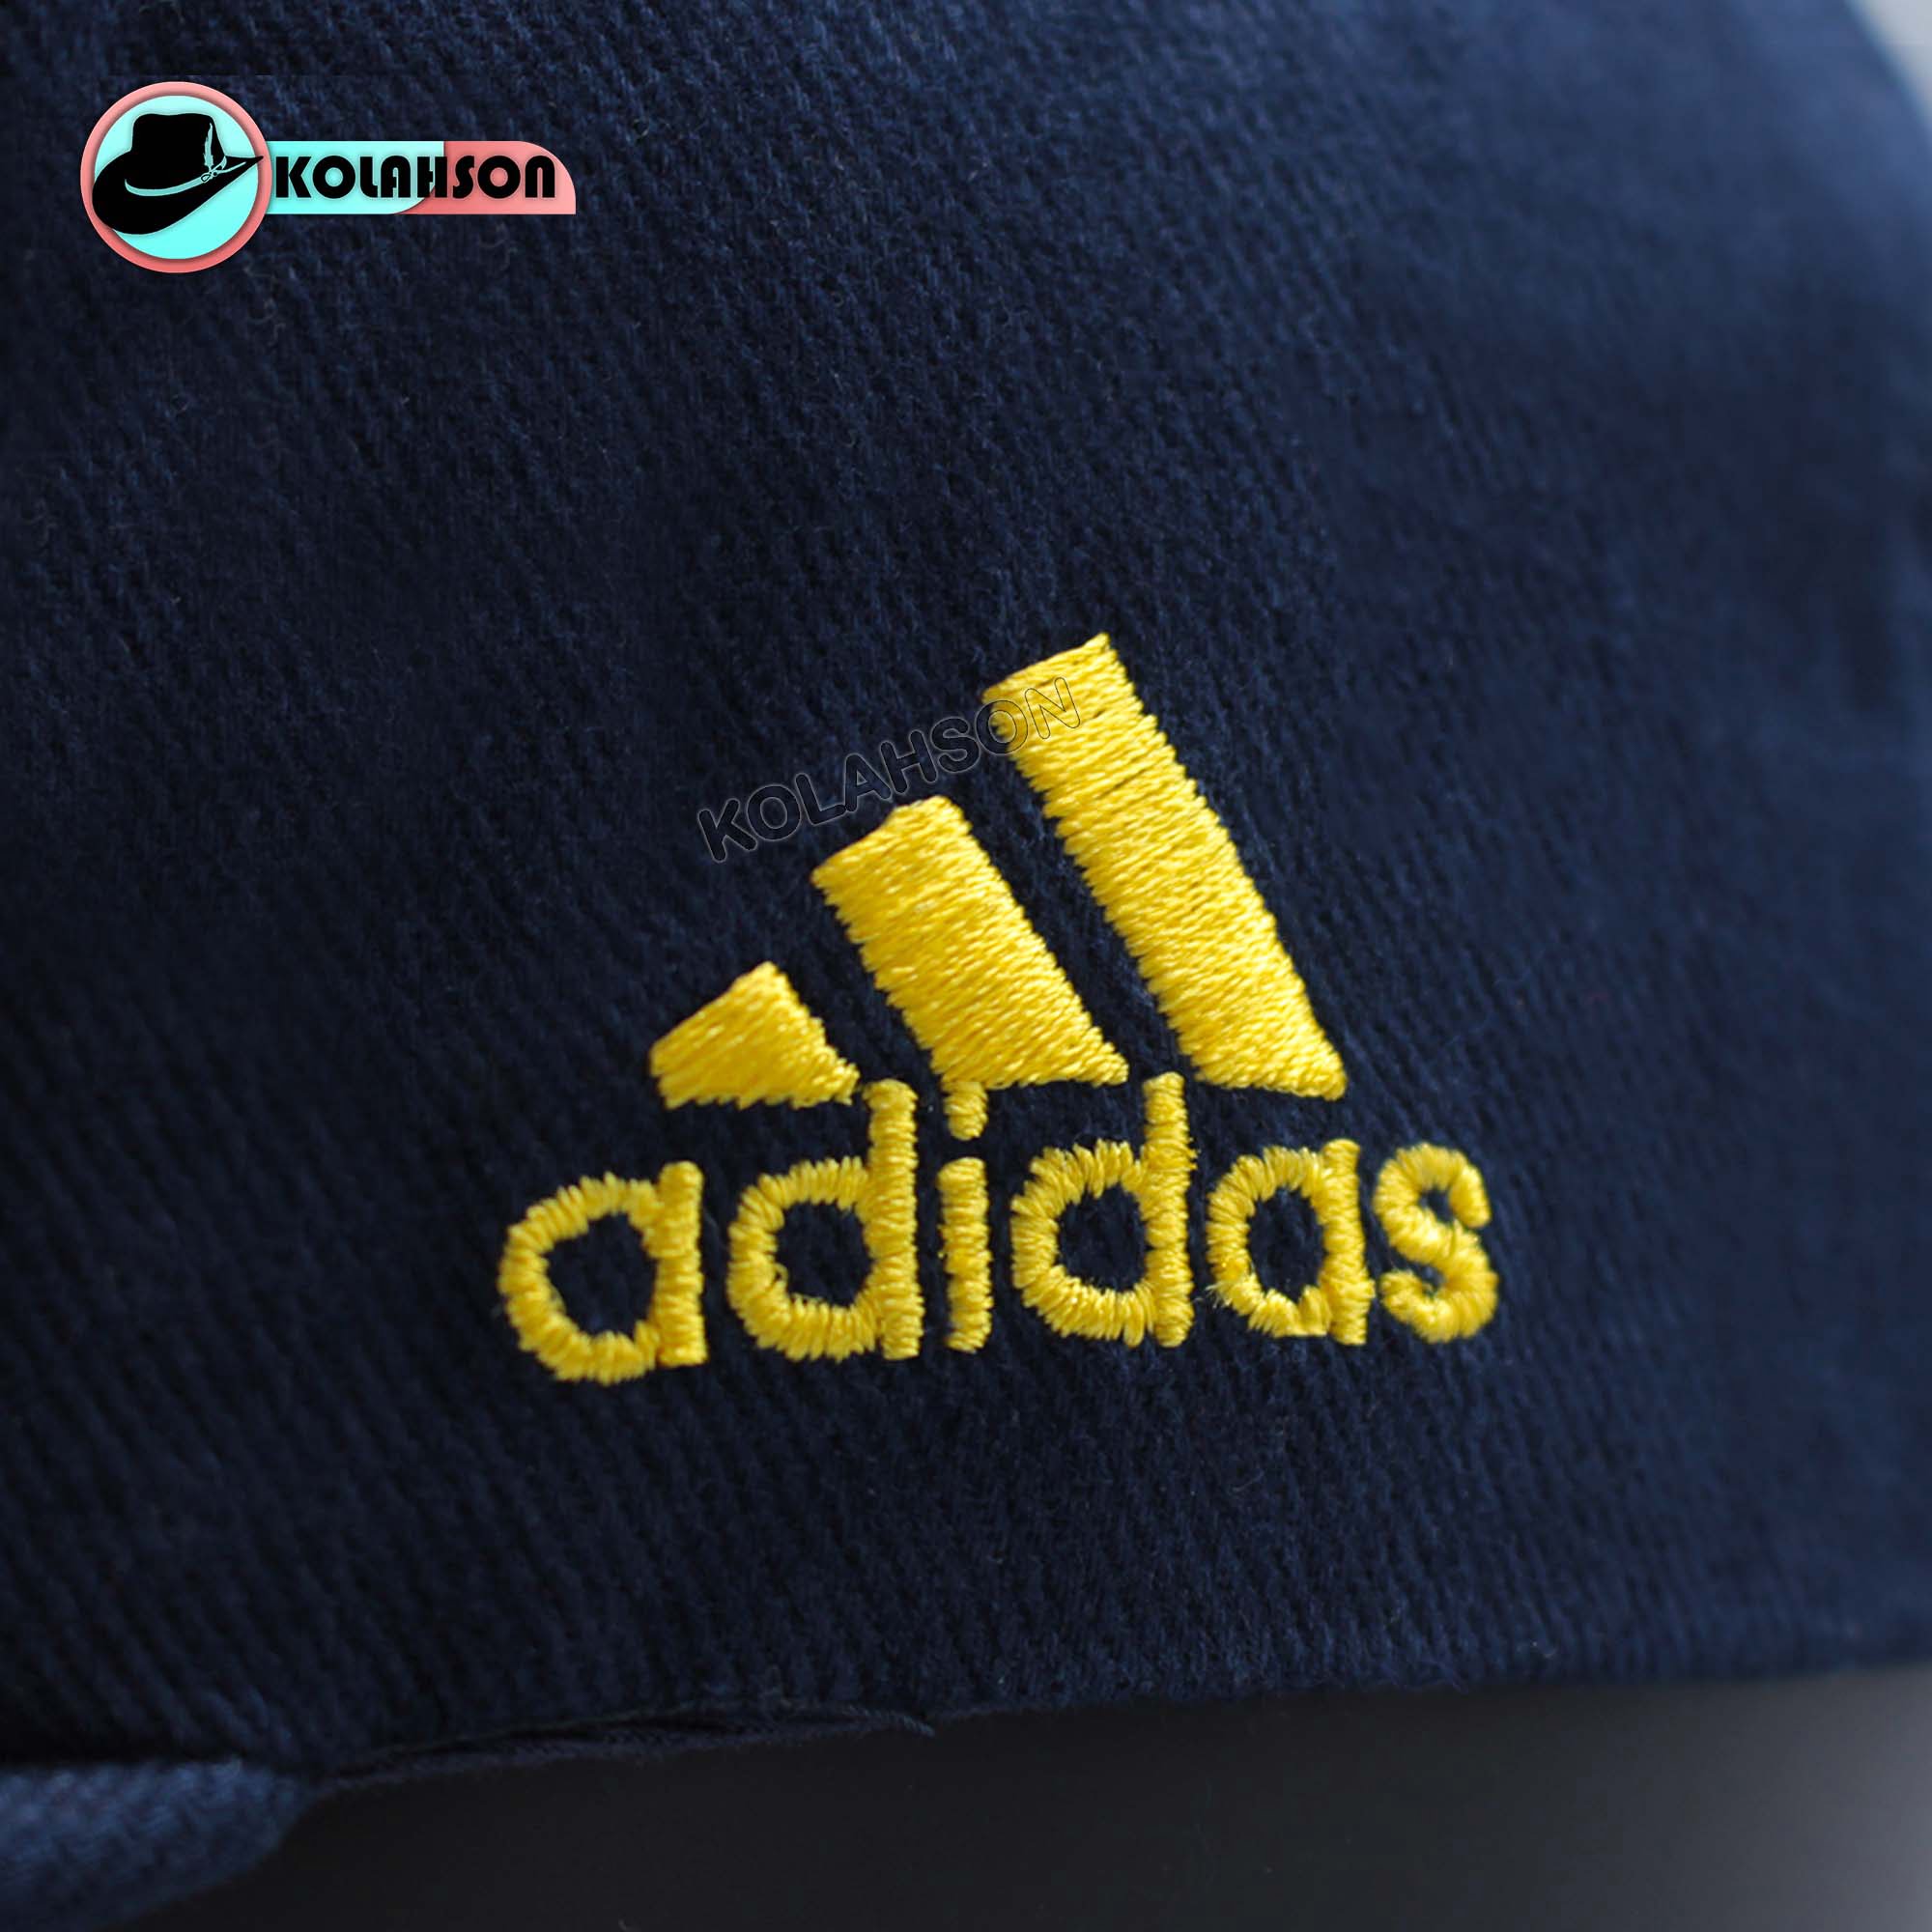 کلاه اورجینال از برند Adidas طرح NAU